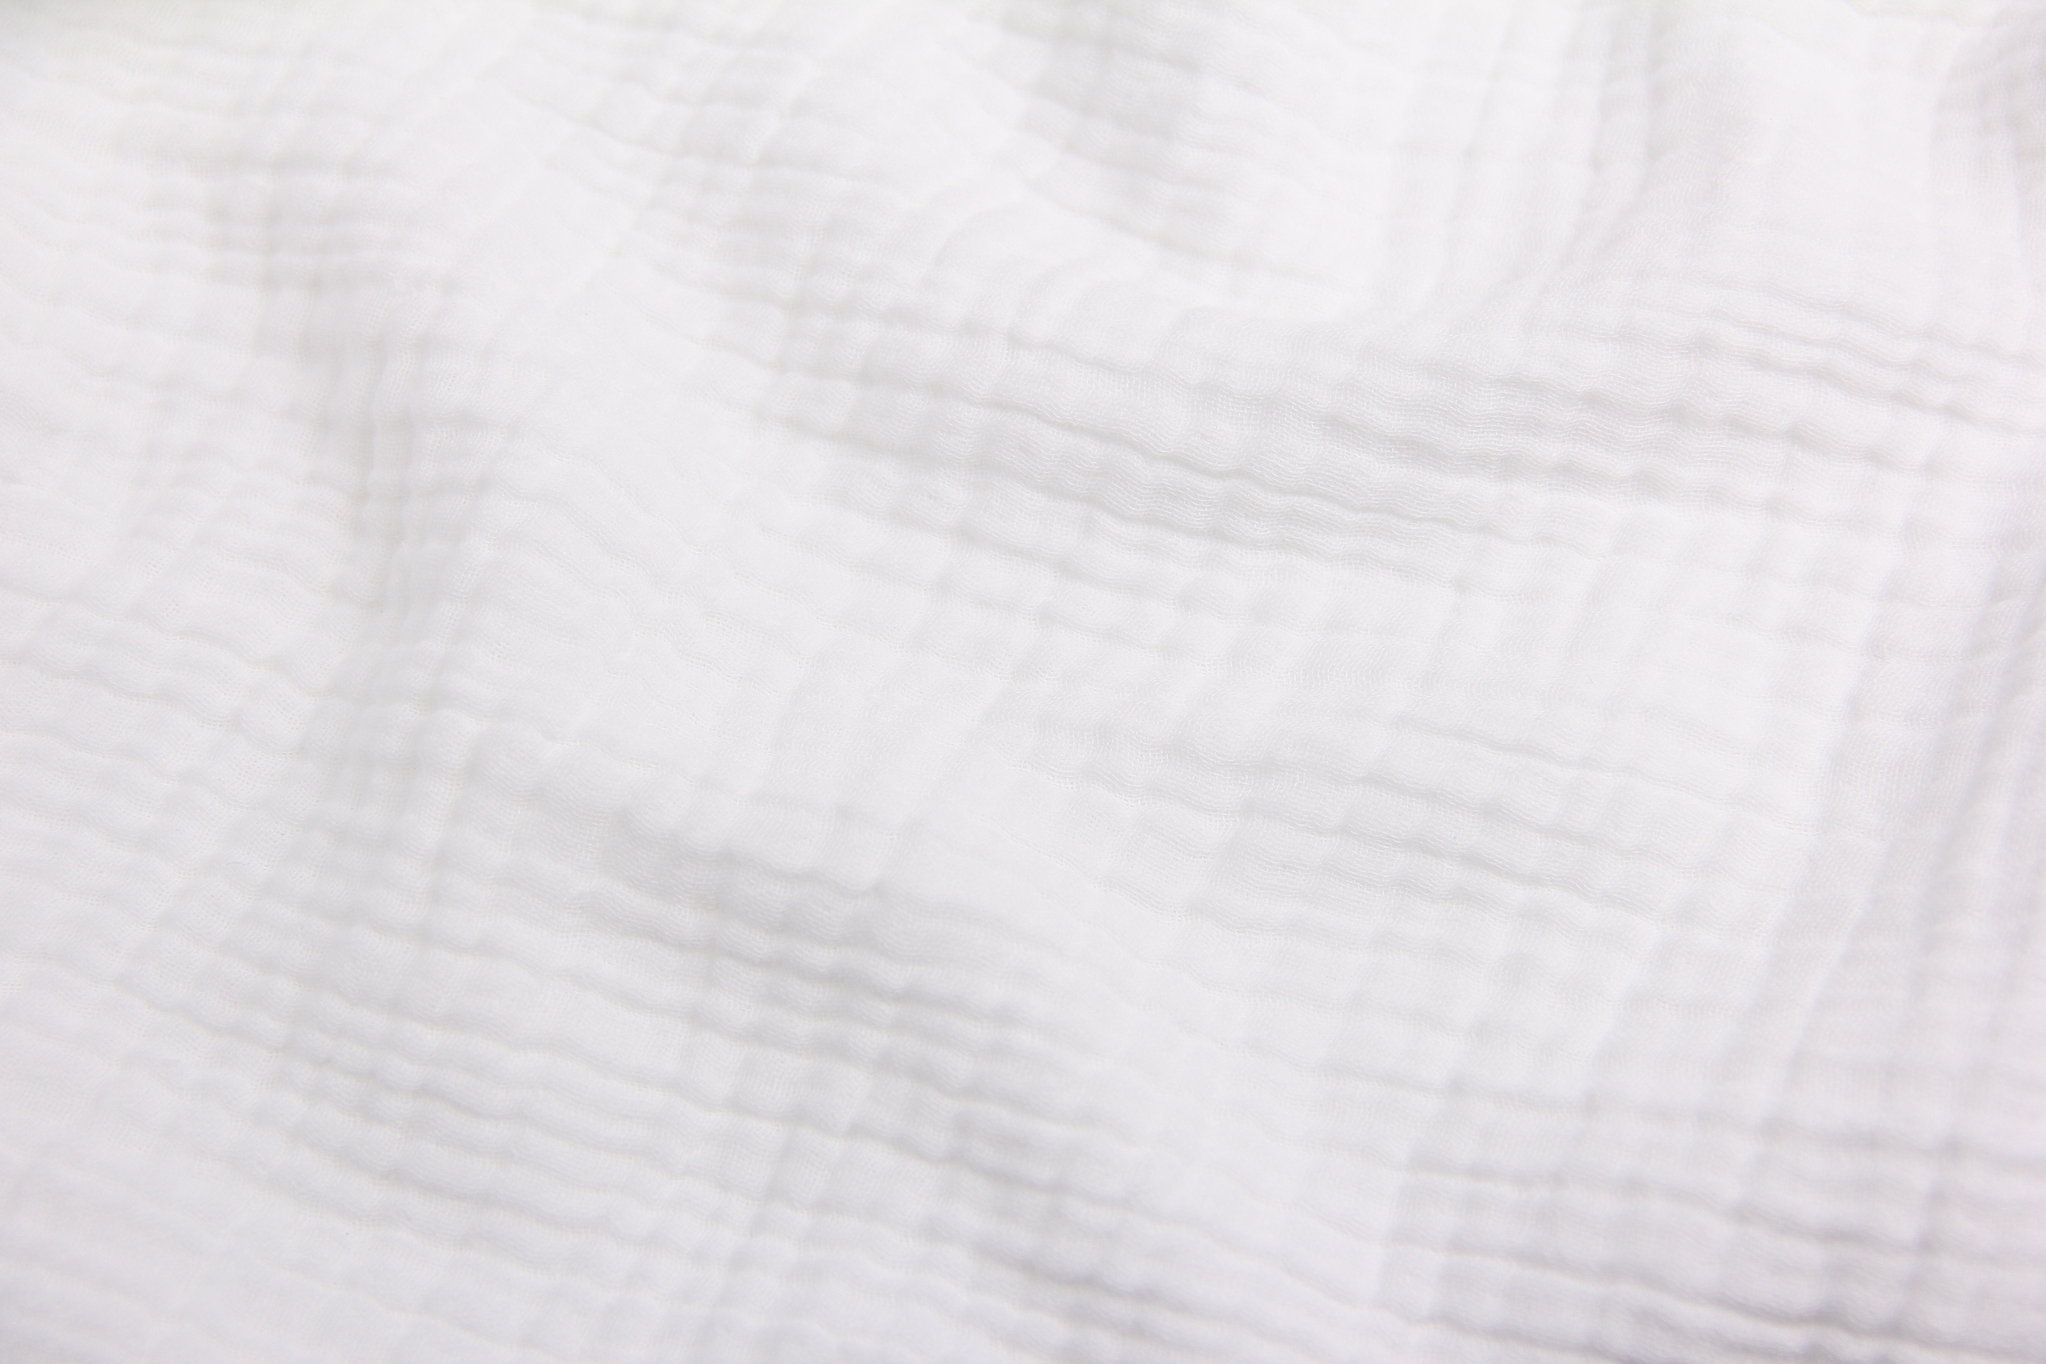 Ткань Муслин жатый четырехслойный Белый, Турция, плотность 220 г/м2, ширина 240 см